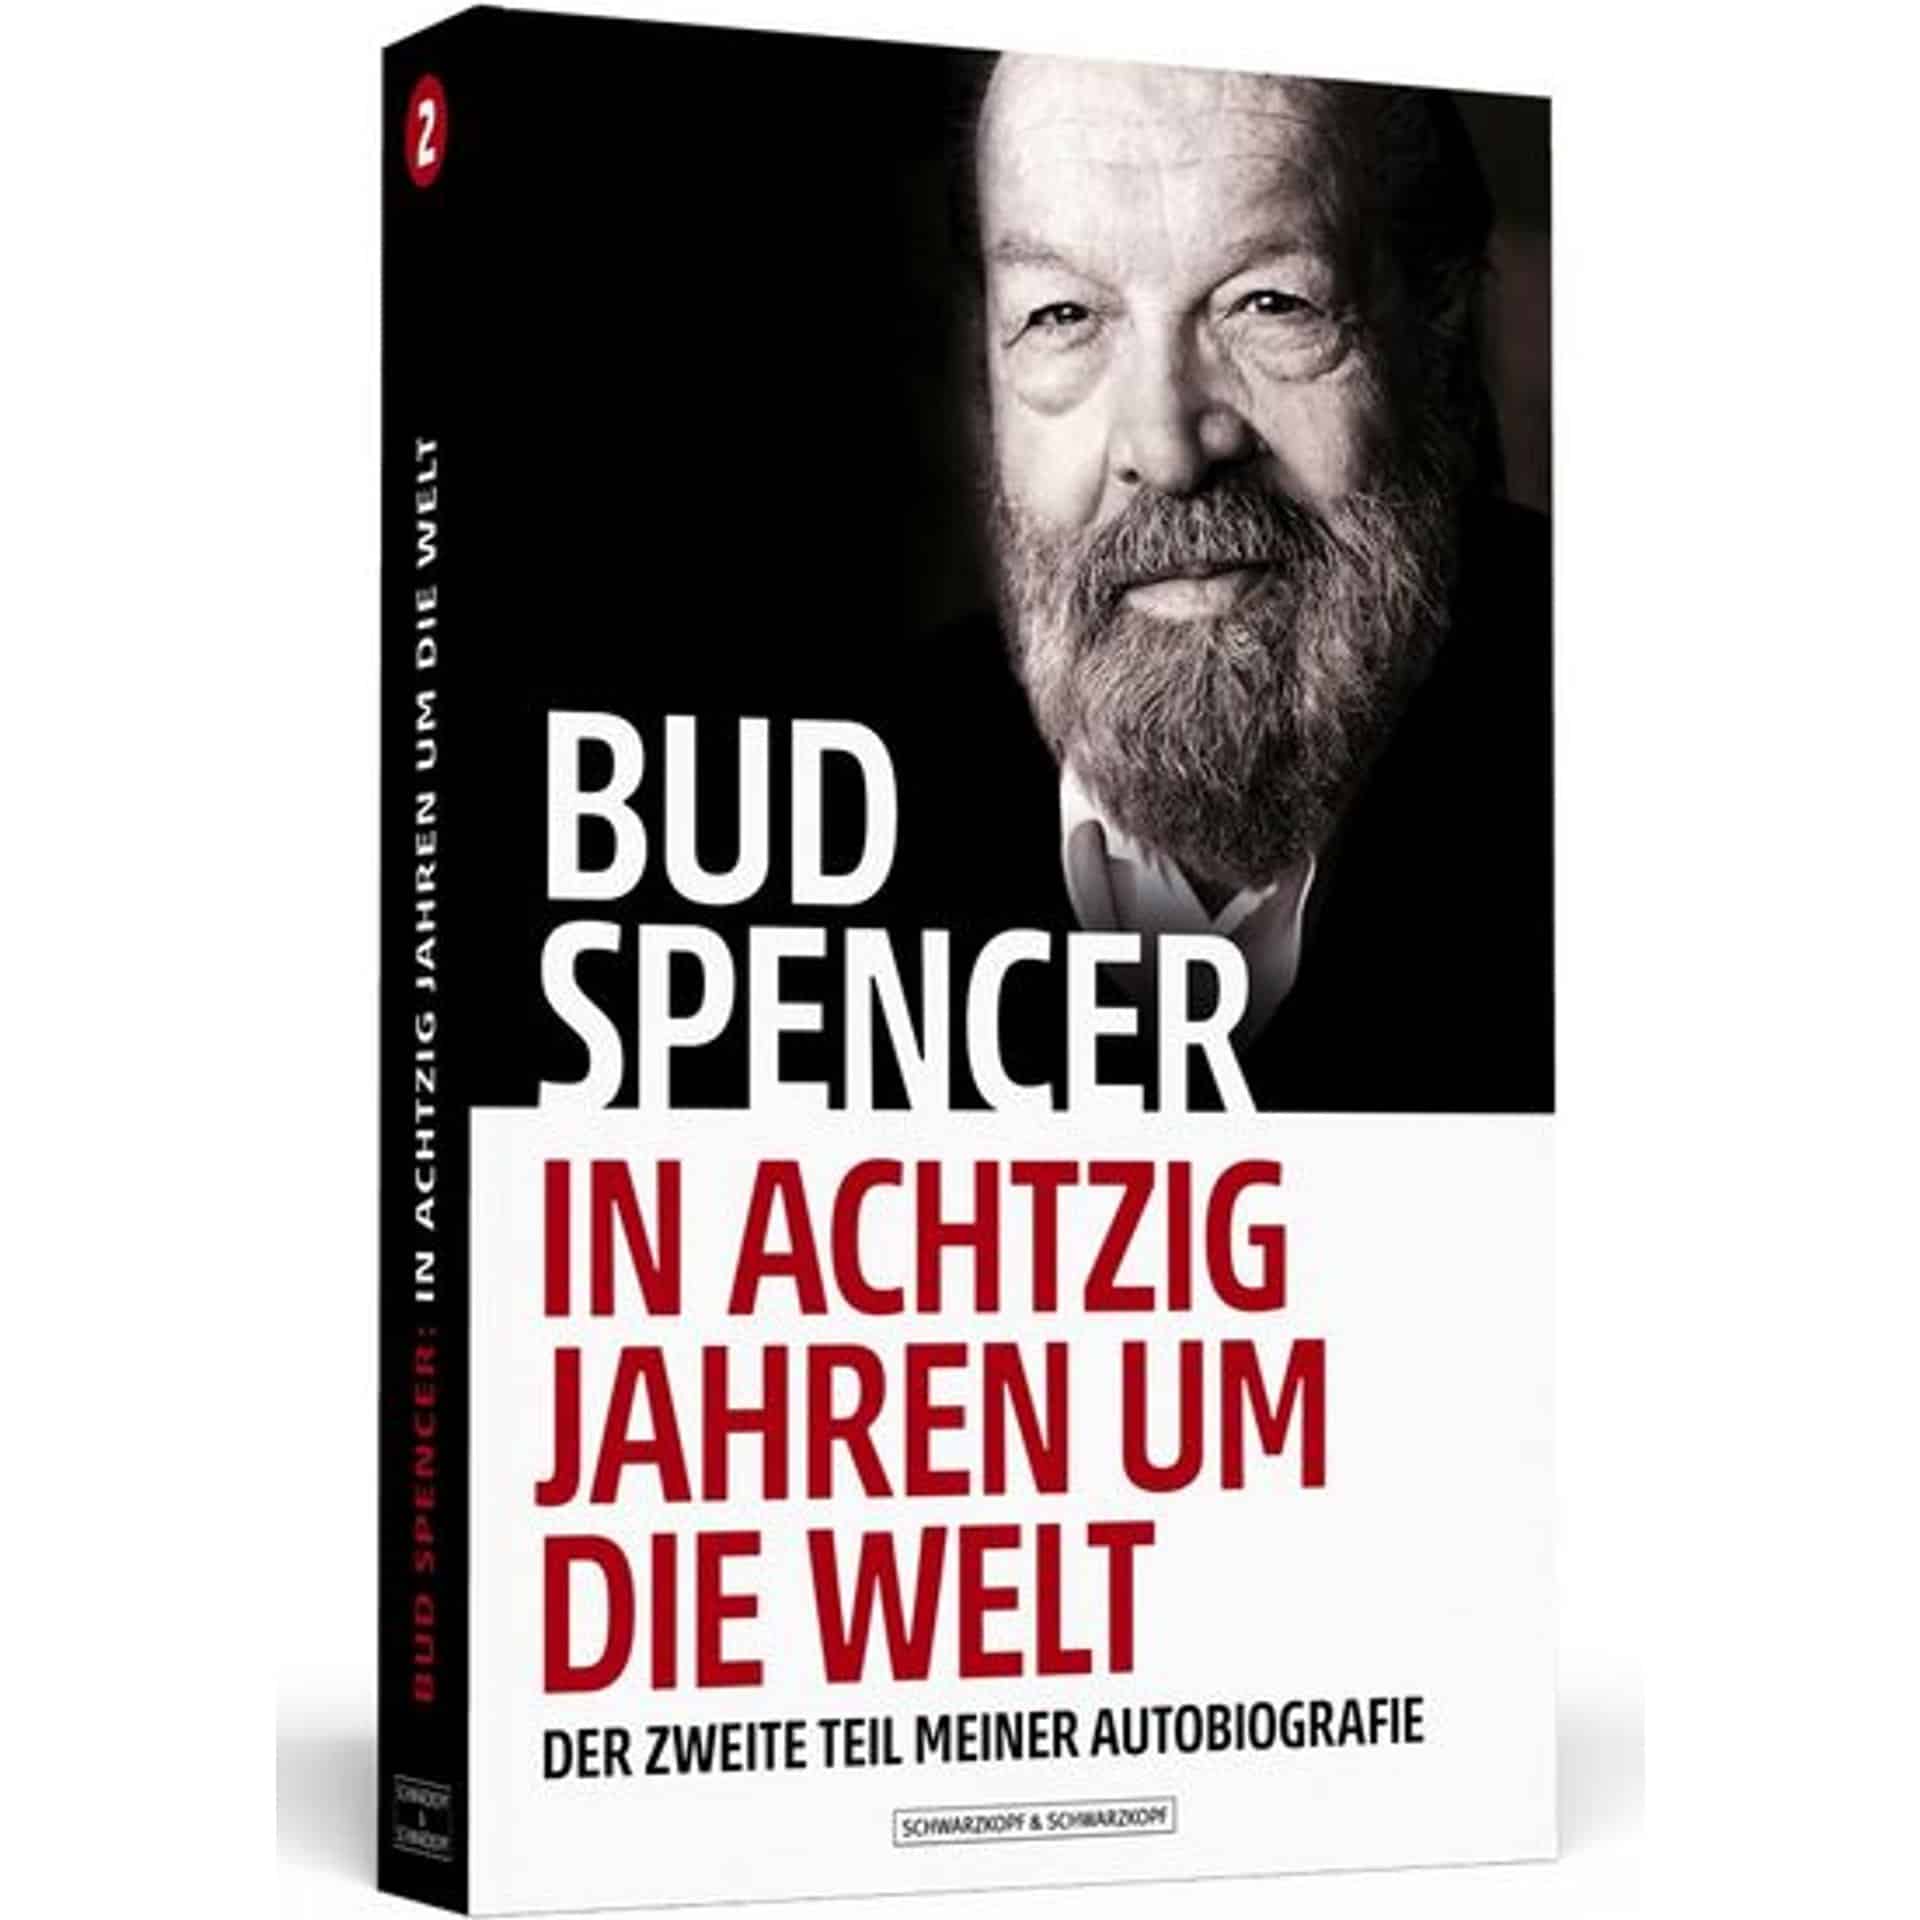 Bud Spencer – In achtzig Jahren um die Welt